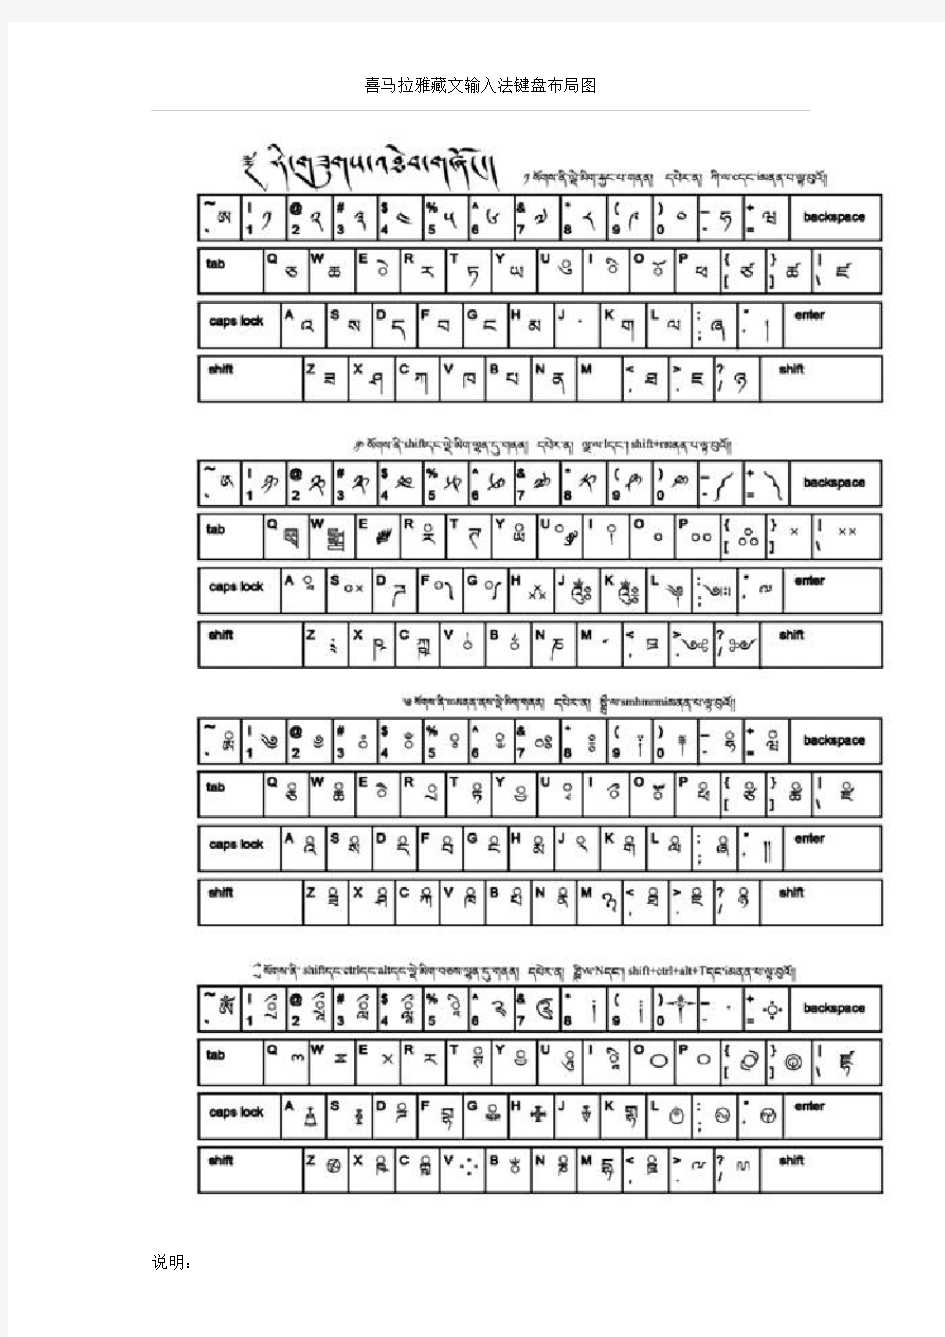 喜马拉雅藏文输入法键盘布局图